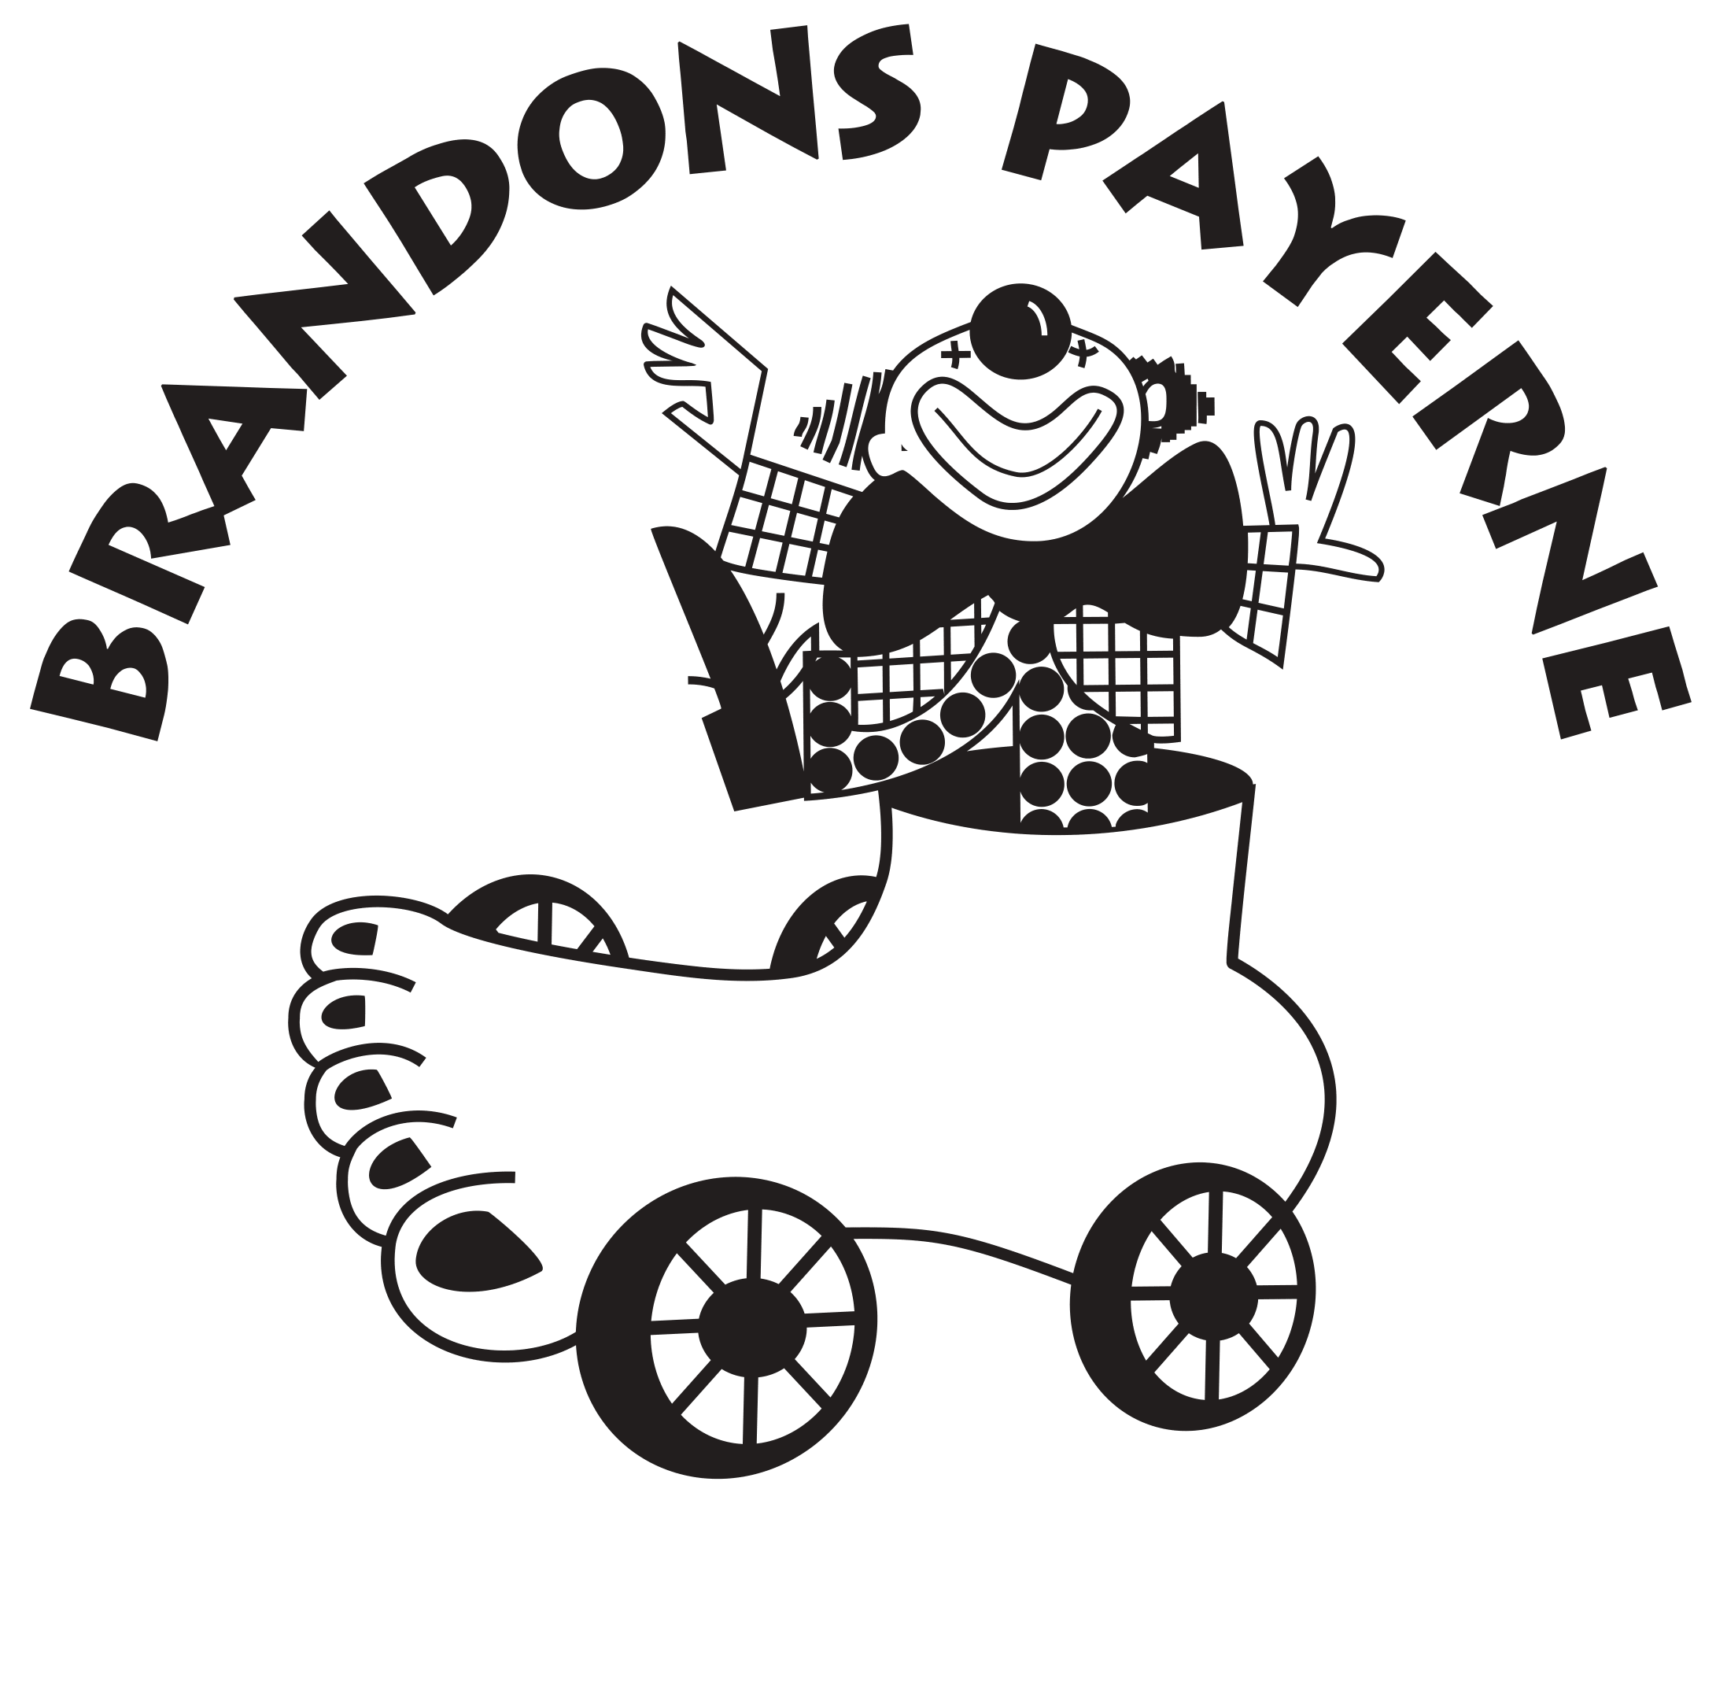 Brandons de Payerne | Union Vinicole de Cully